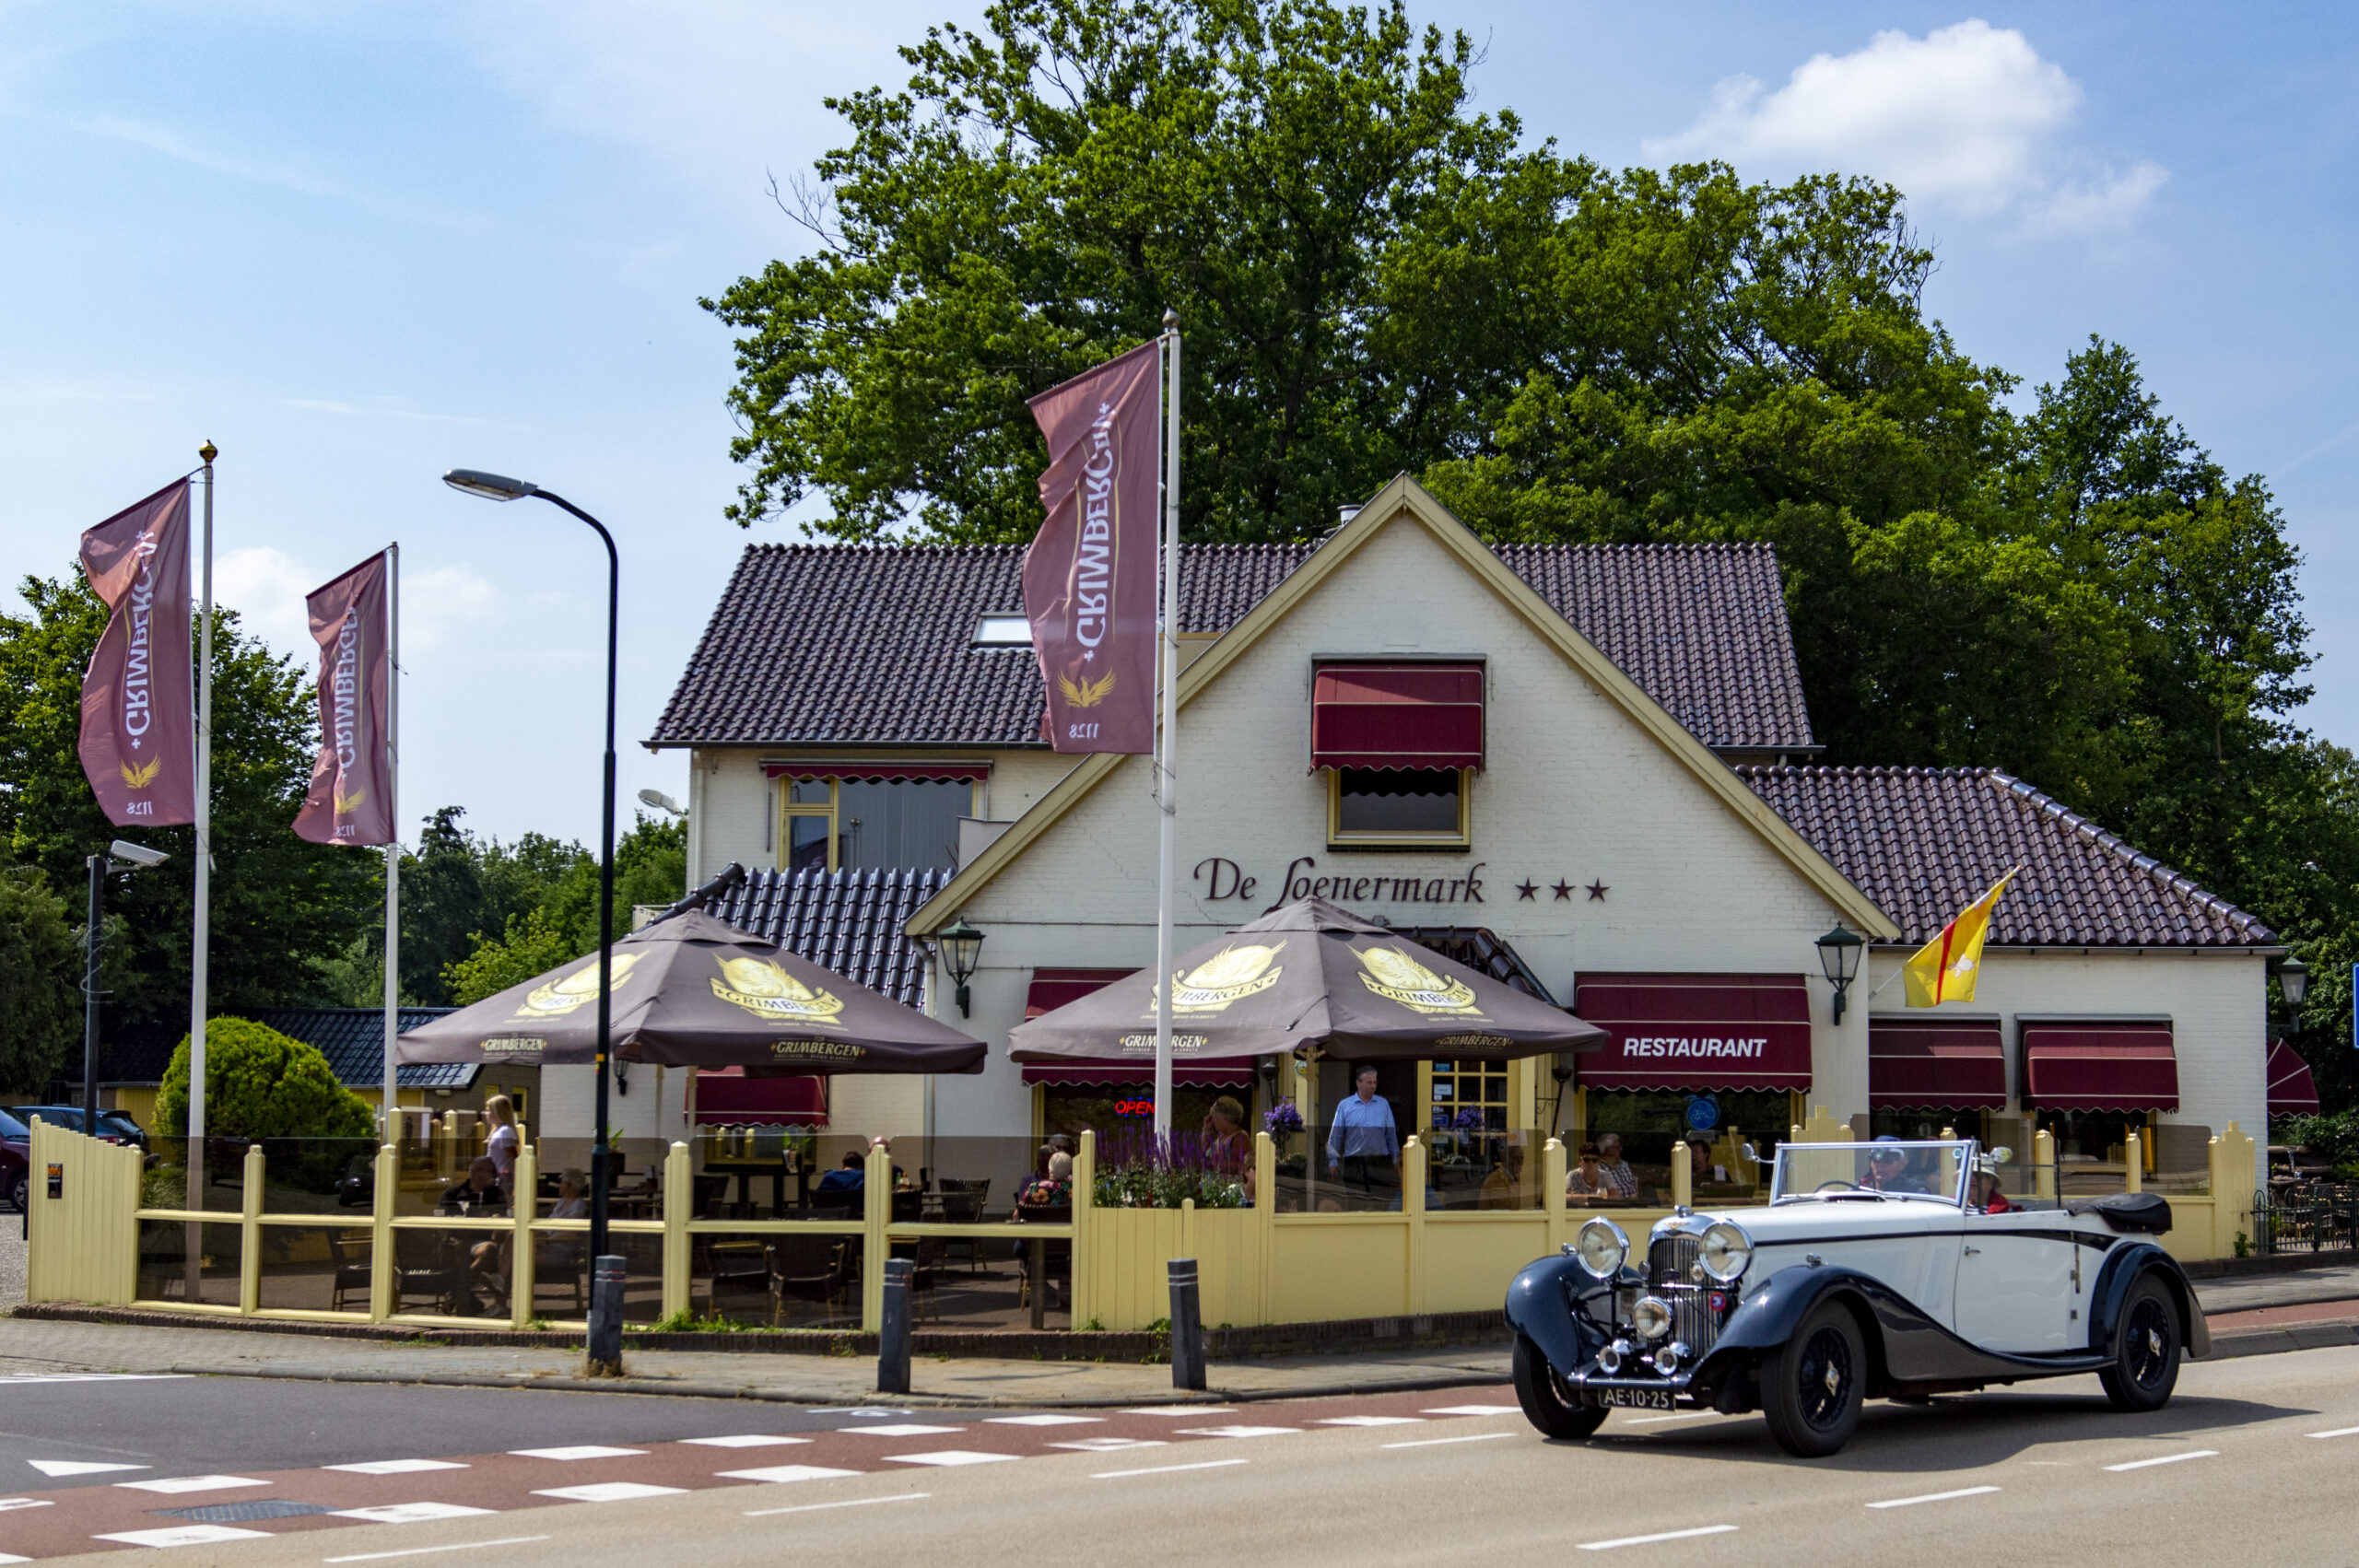 Hotel Restaurant de Loenermark - Image1